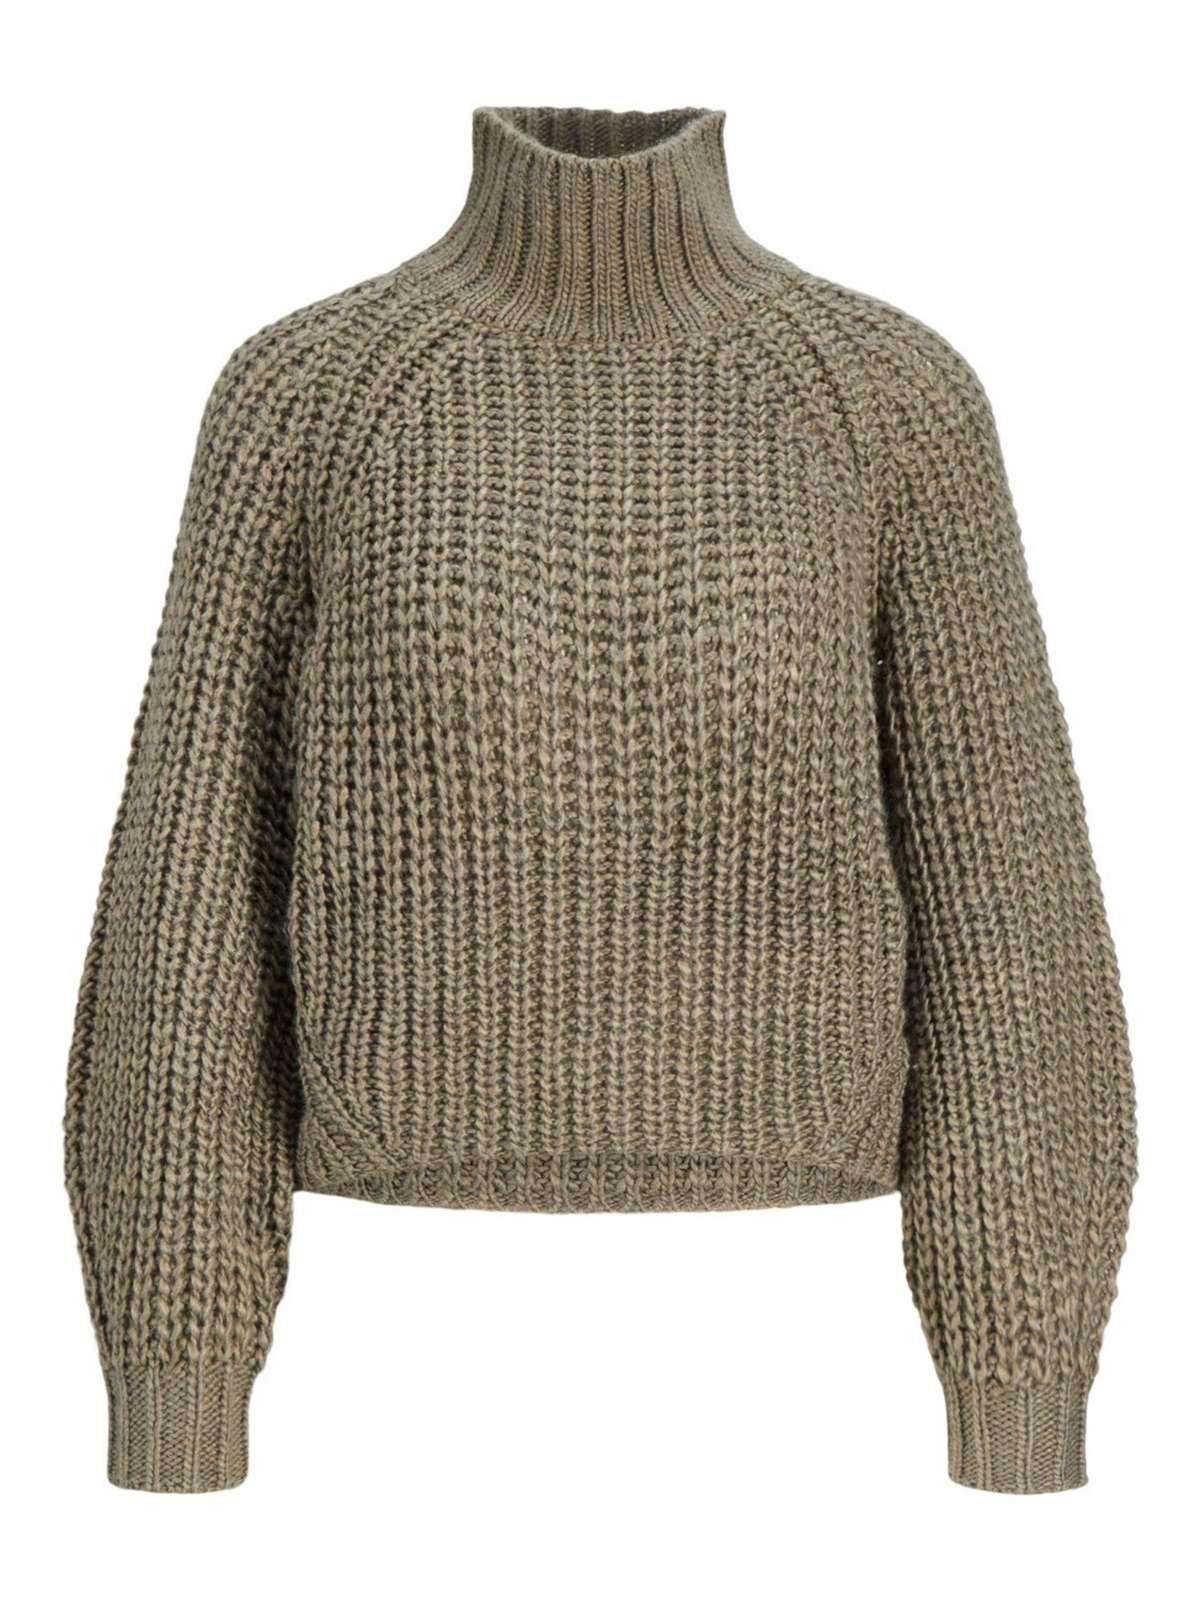 Вязаный пуловер-свитер Келви Массивная рубашка с длинными рукавами и высоким воротником